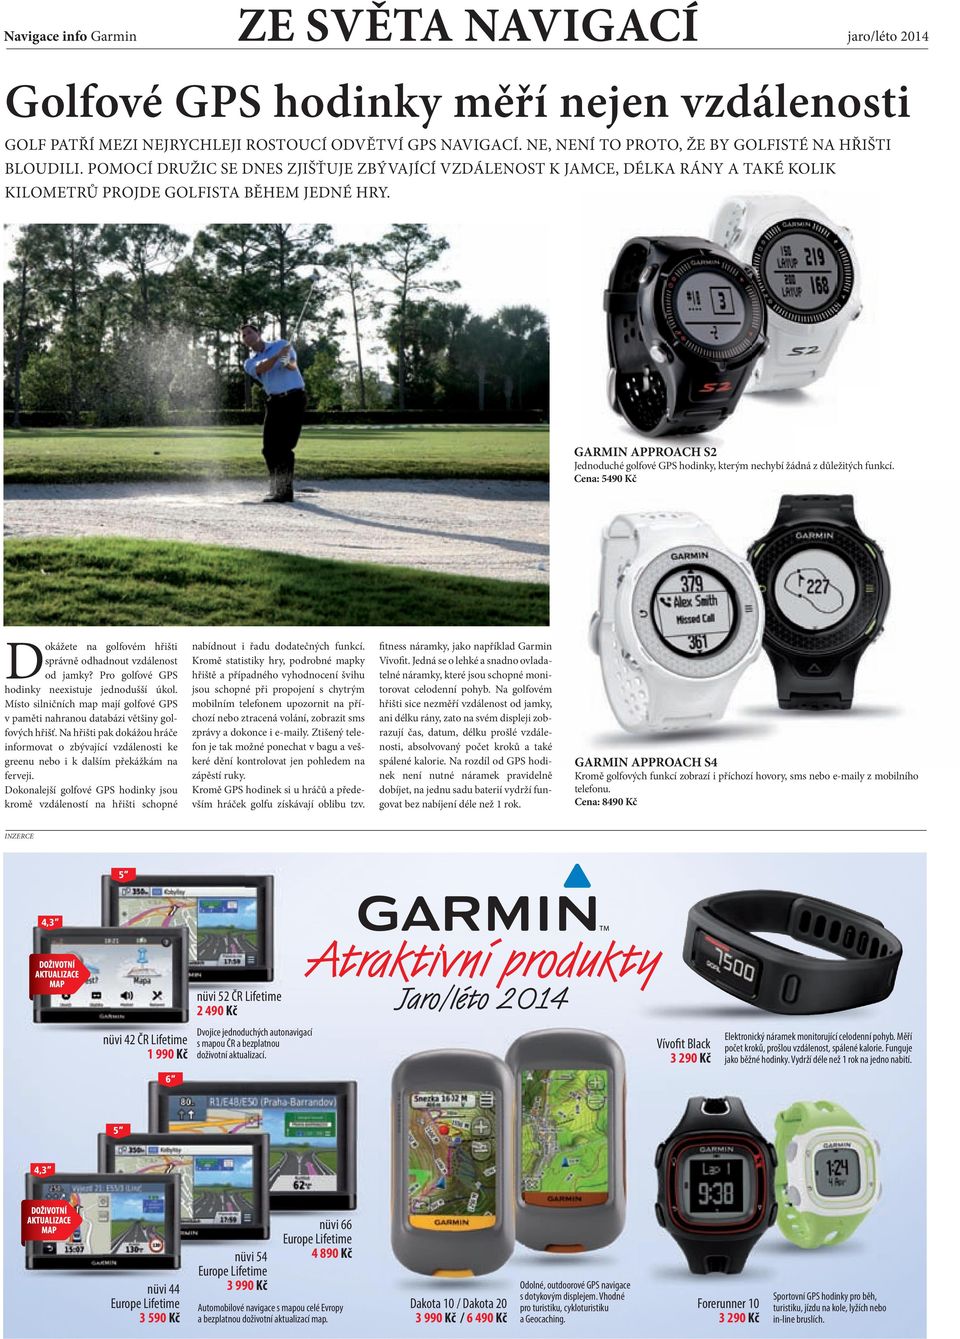 GARMIN APPROACH S2 Jednoduché golfové GPS hodinky, kterým nechybí žádná z důležitých funkcí. Cena: 5490 Kč Dokážete na golfovém hřišti správně odhadnout vzdálenost od jamky?